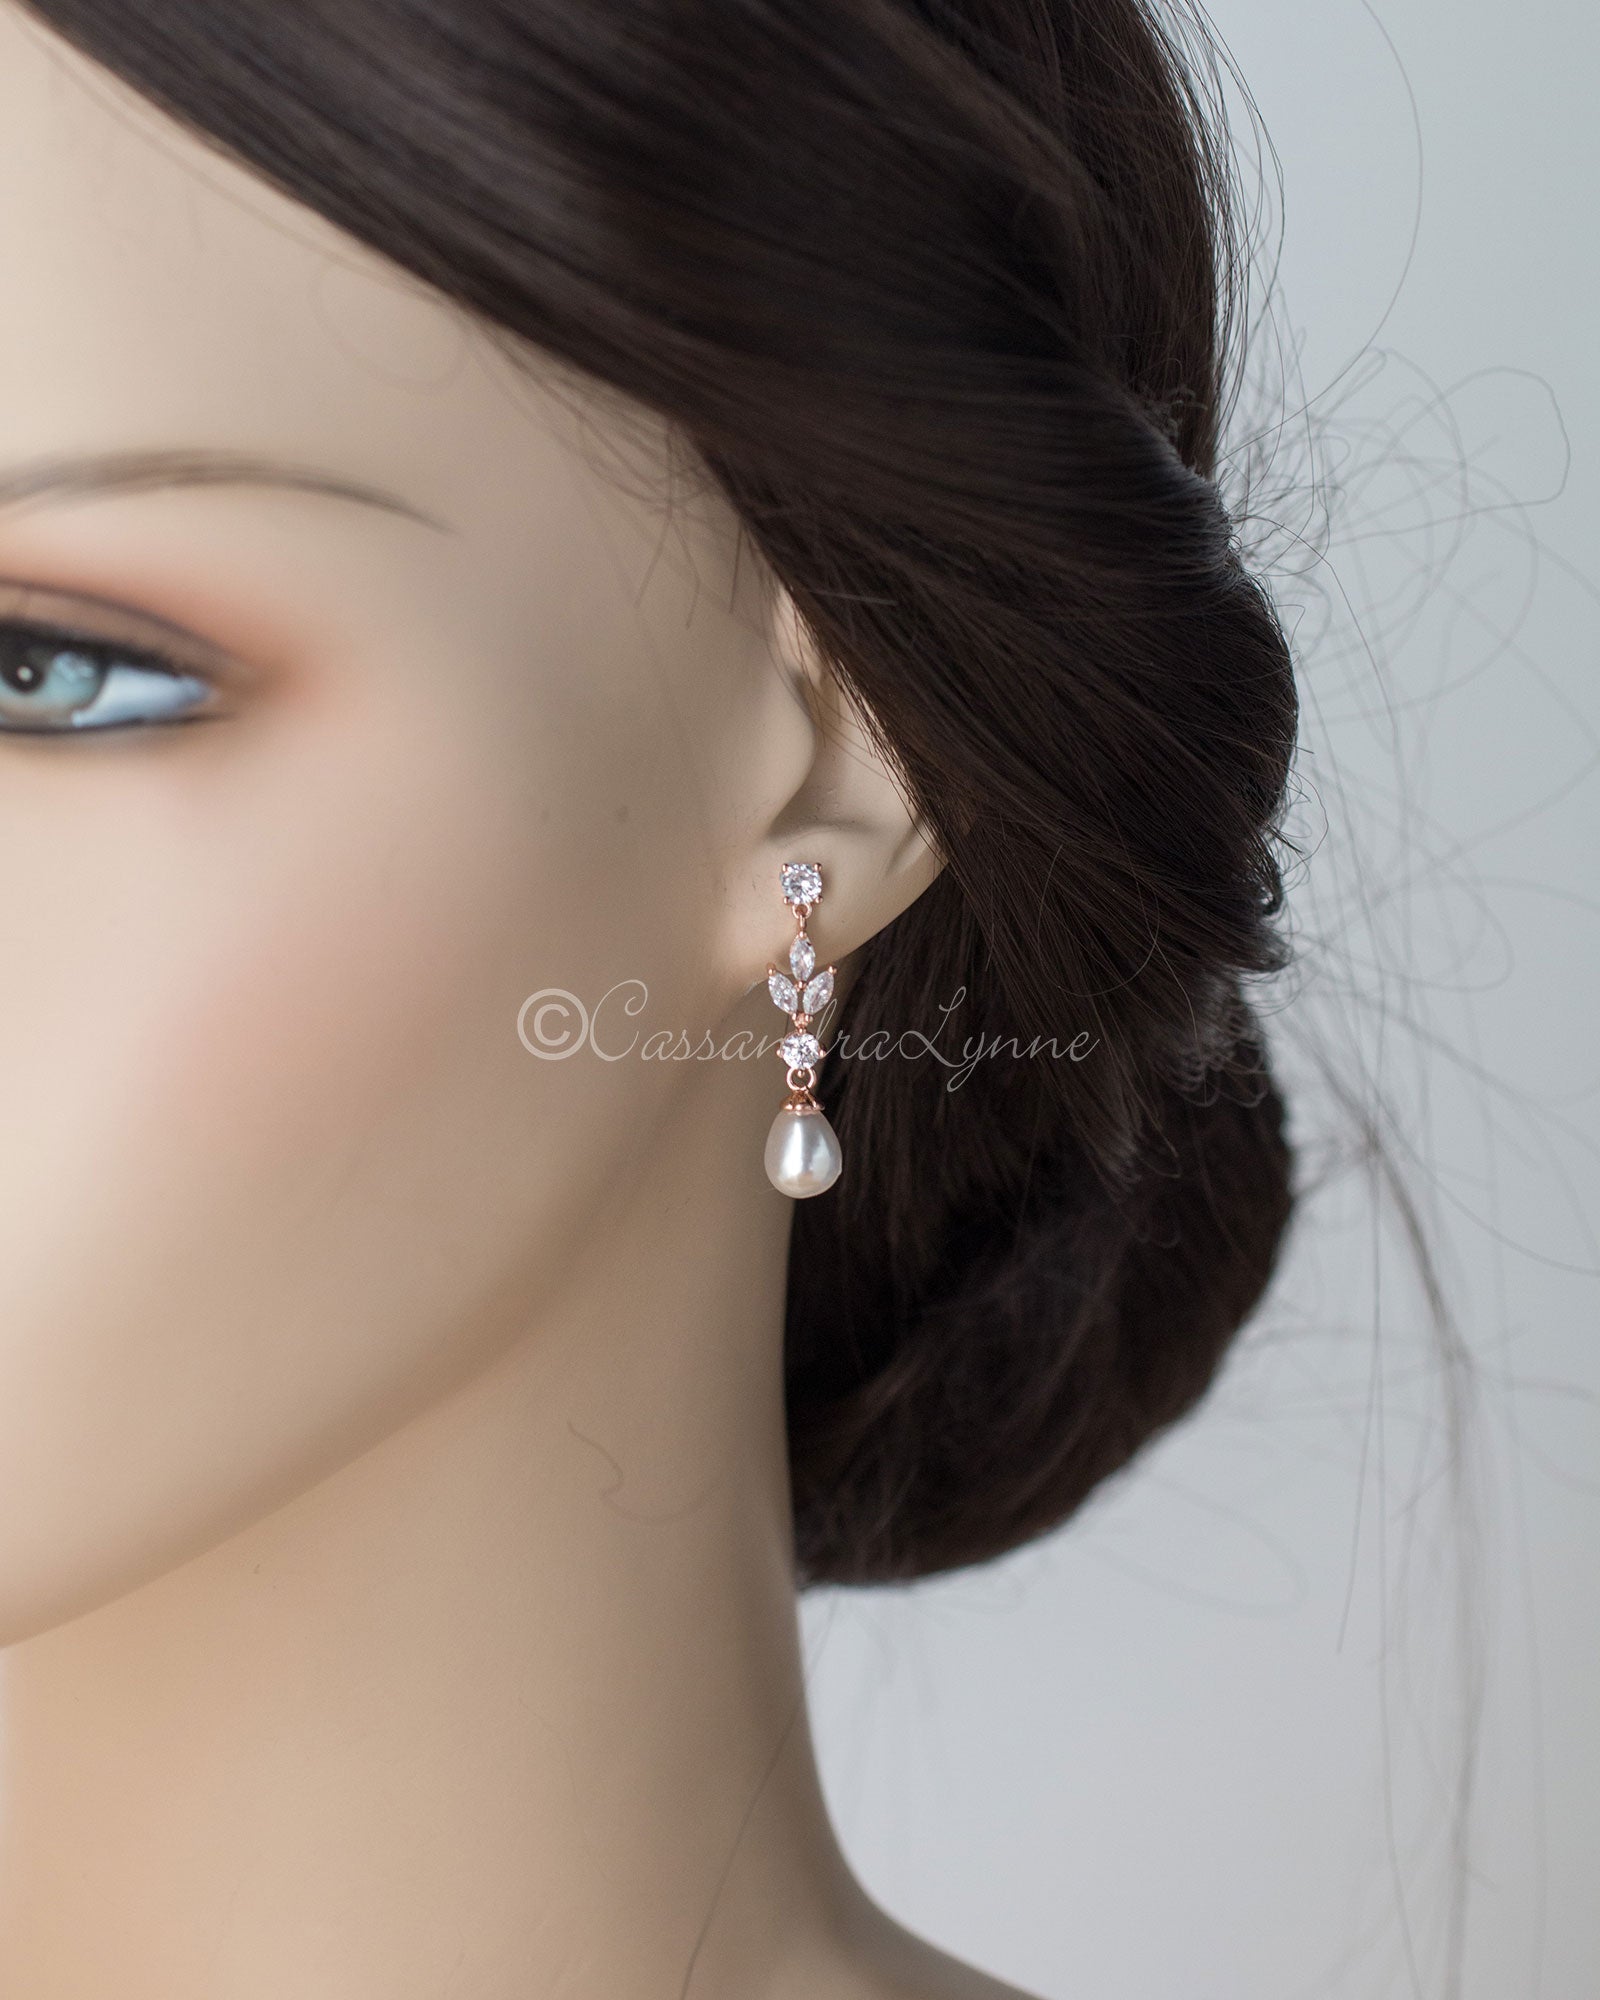 Bridal Earrings of Teardrop Pearls and CZ - Cassandra Lynne